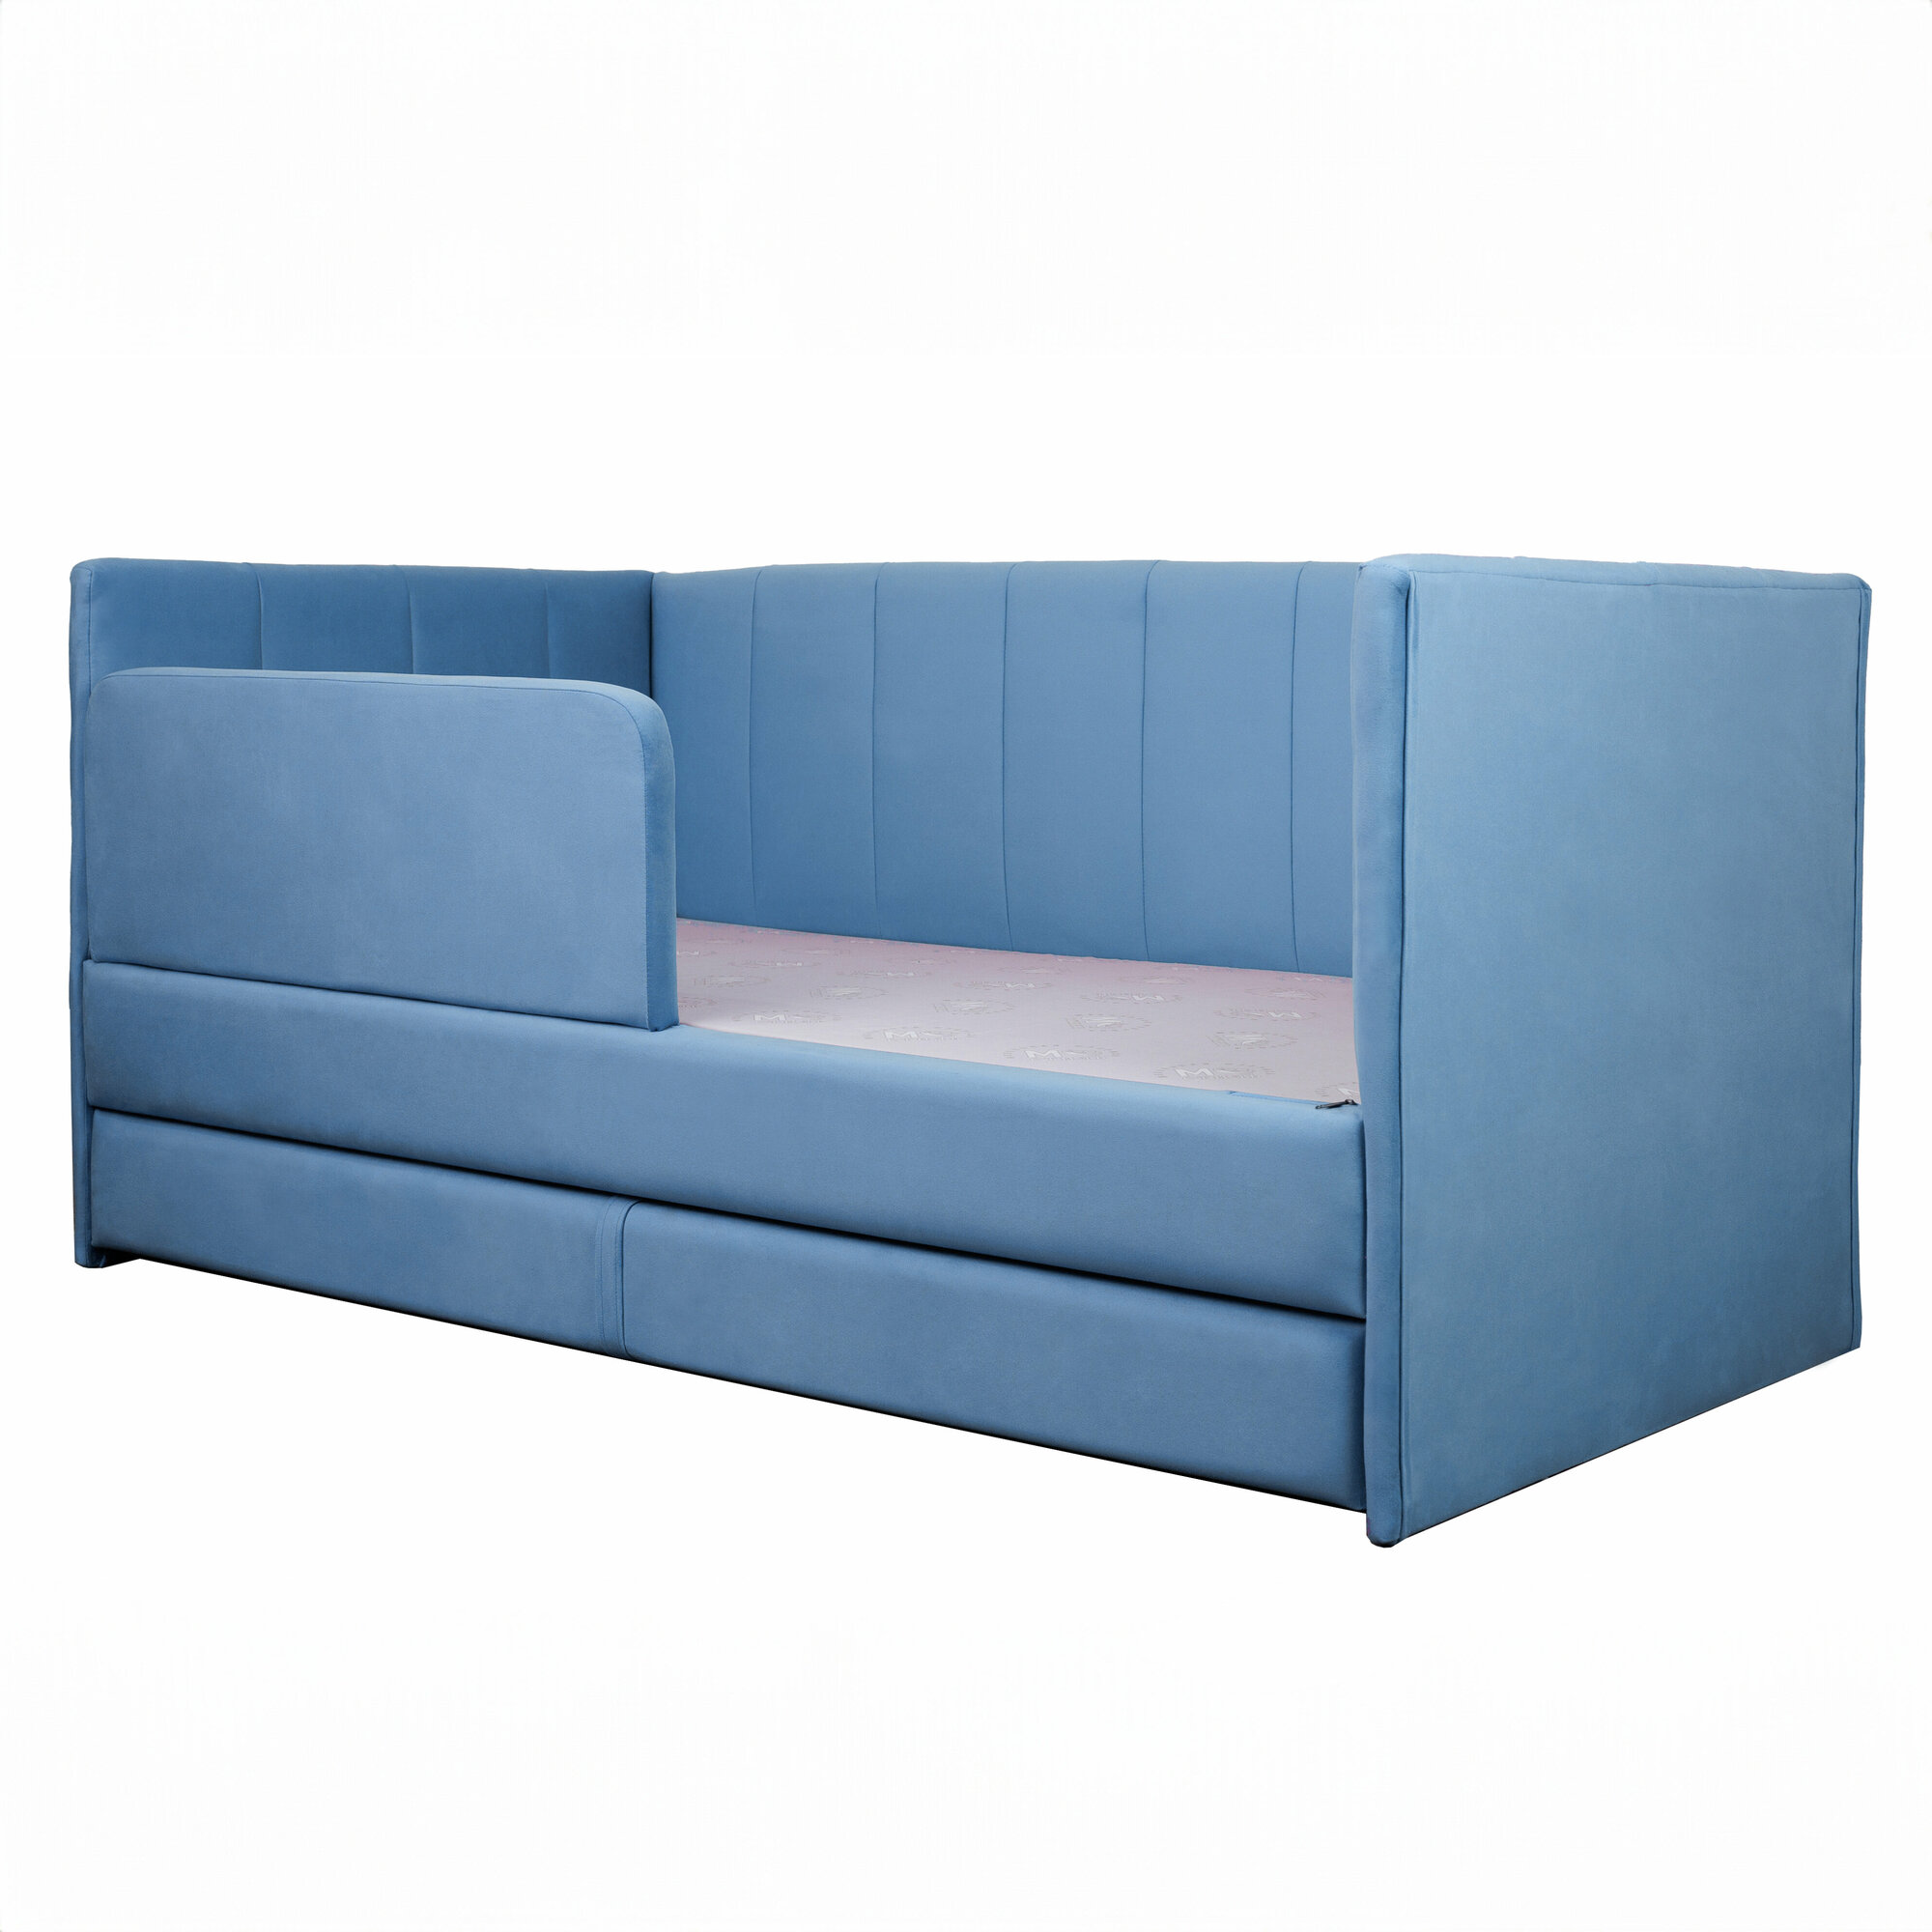 Кровать-диван Хагги 160*80 голубая с защитным бортиком, с ящиком для хранения